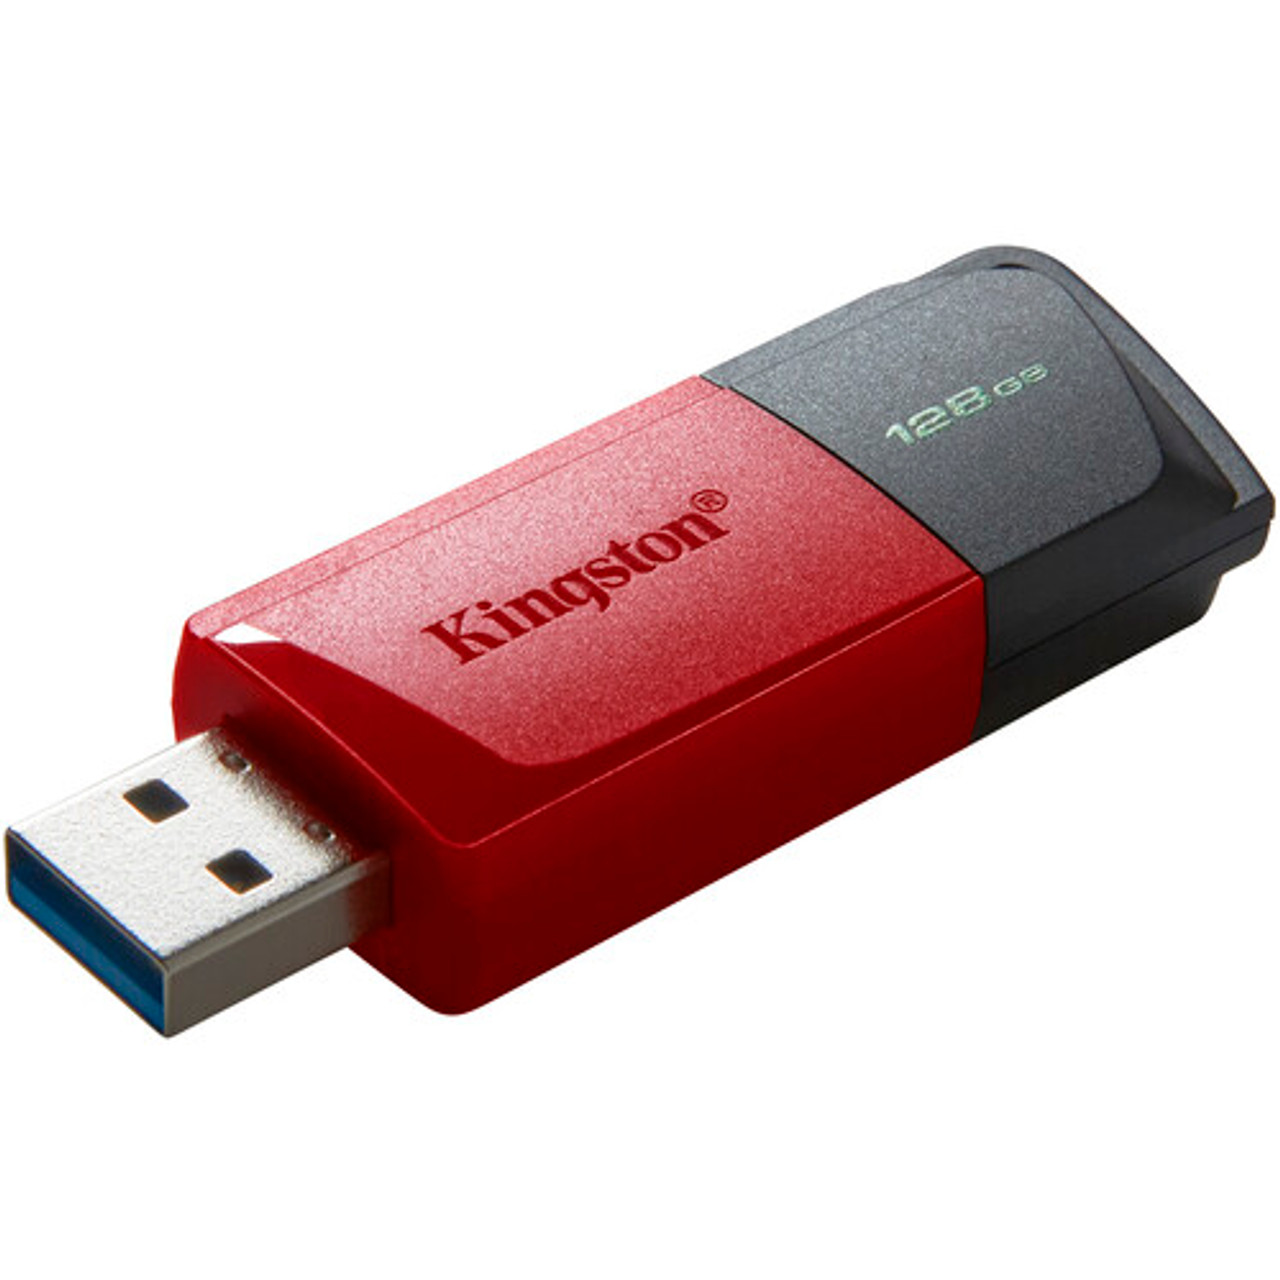 Memoria USB flash drive Kingston 128 GB - USB 3.0